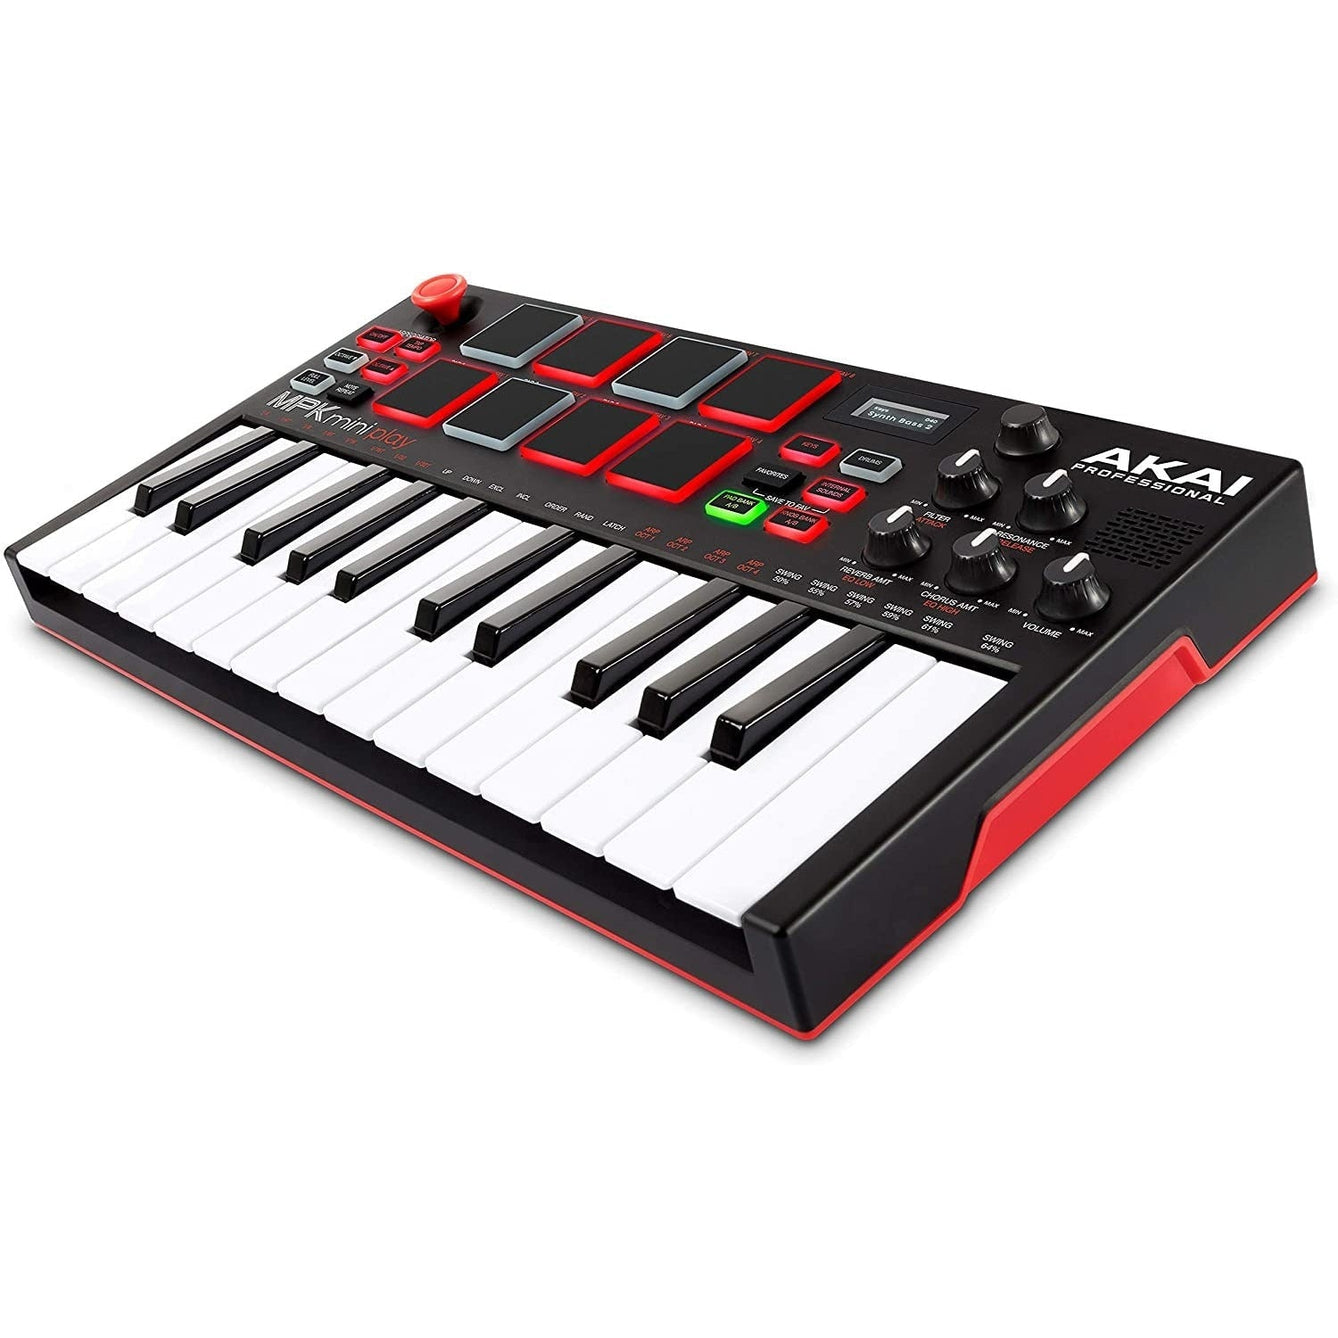 MIDI Keyboard Controller Akai Professional MPK Mini Play-Mai Nguyên Music